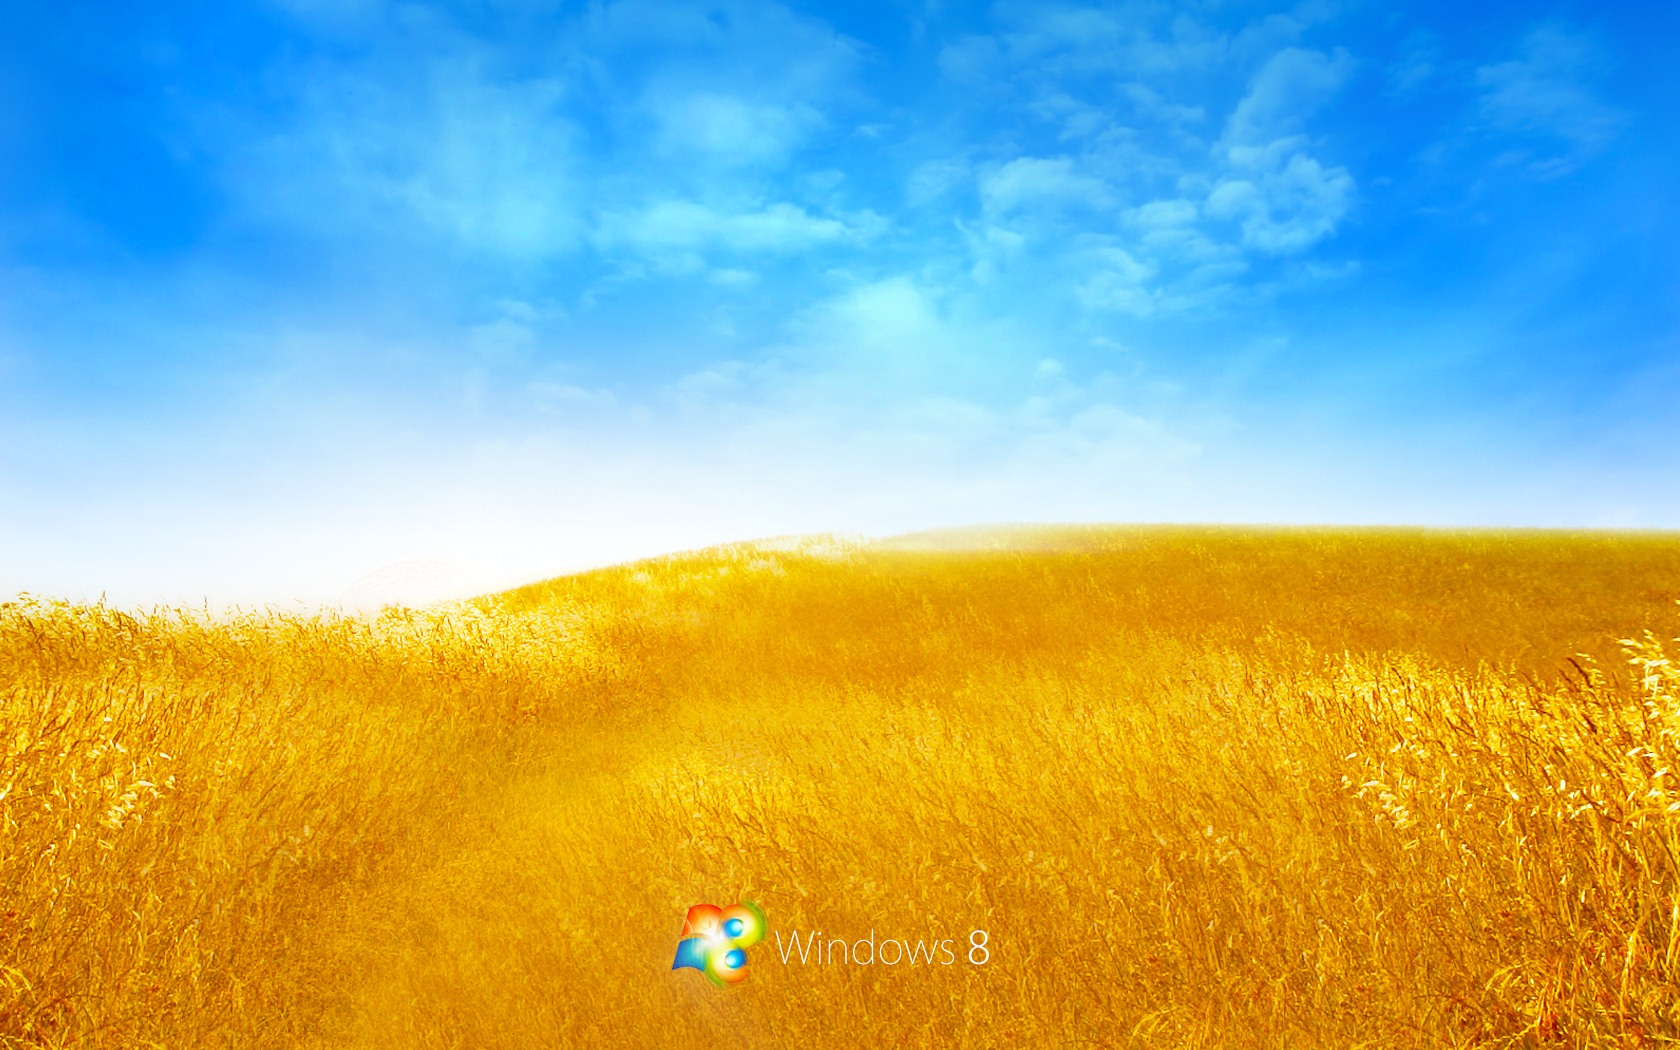 Fond d'écran Windows 8 Theme (2) #16 - 1680x1050